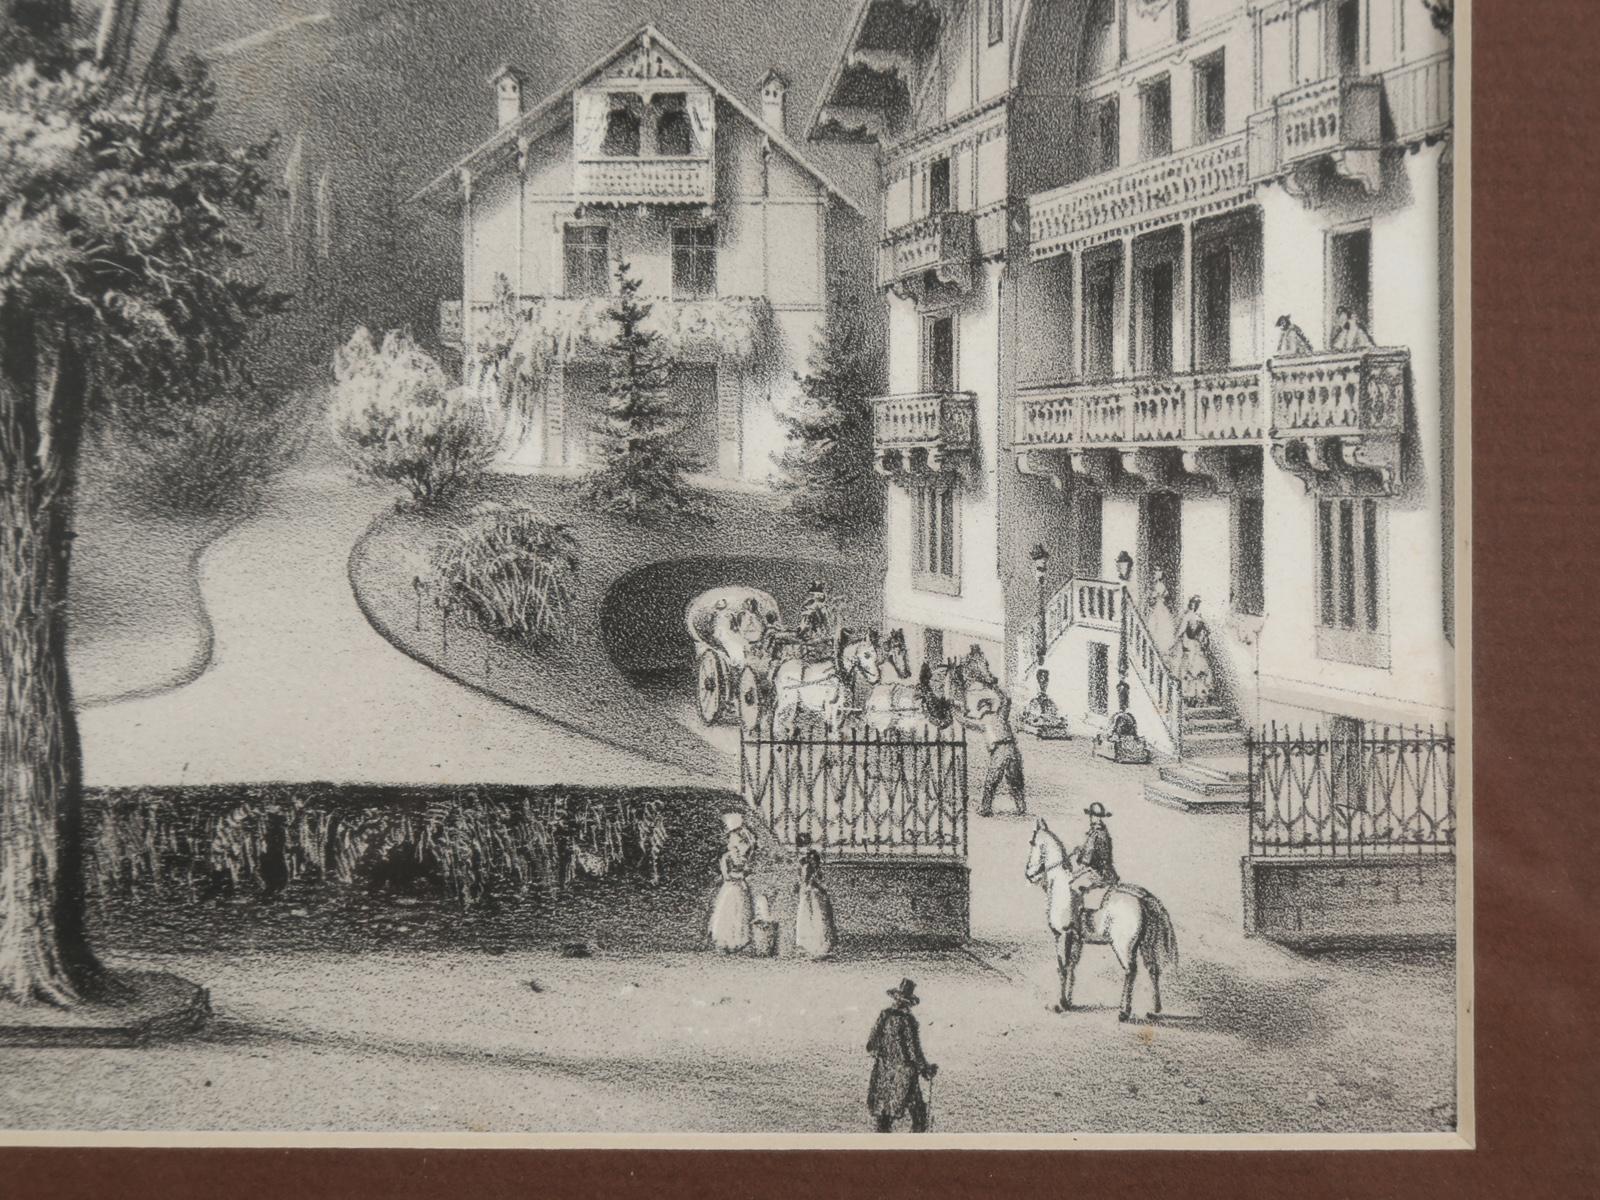 Title Vues Nouvelles or New Views, Black Forest Village Scene, circa 1800s 5